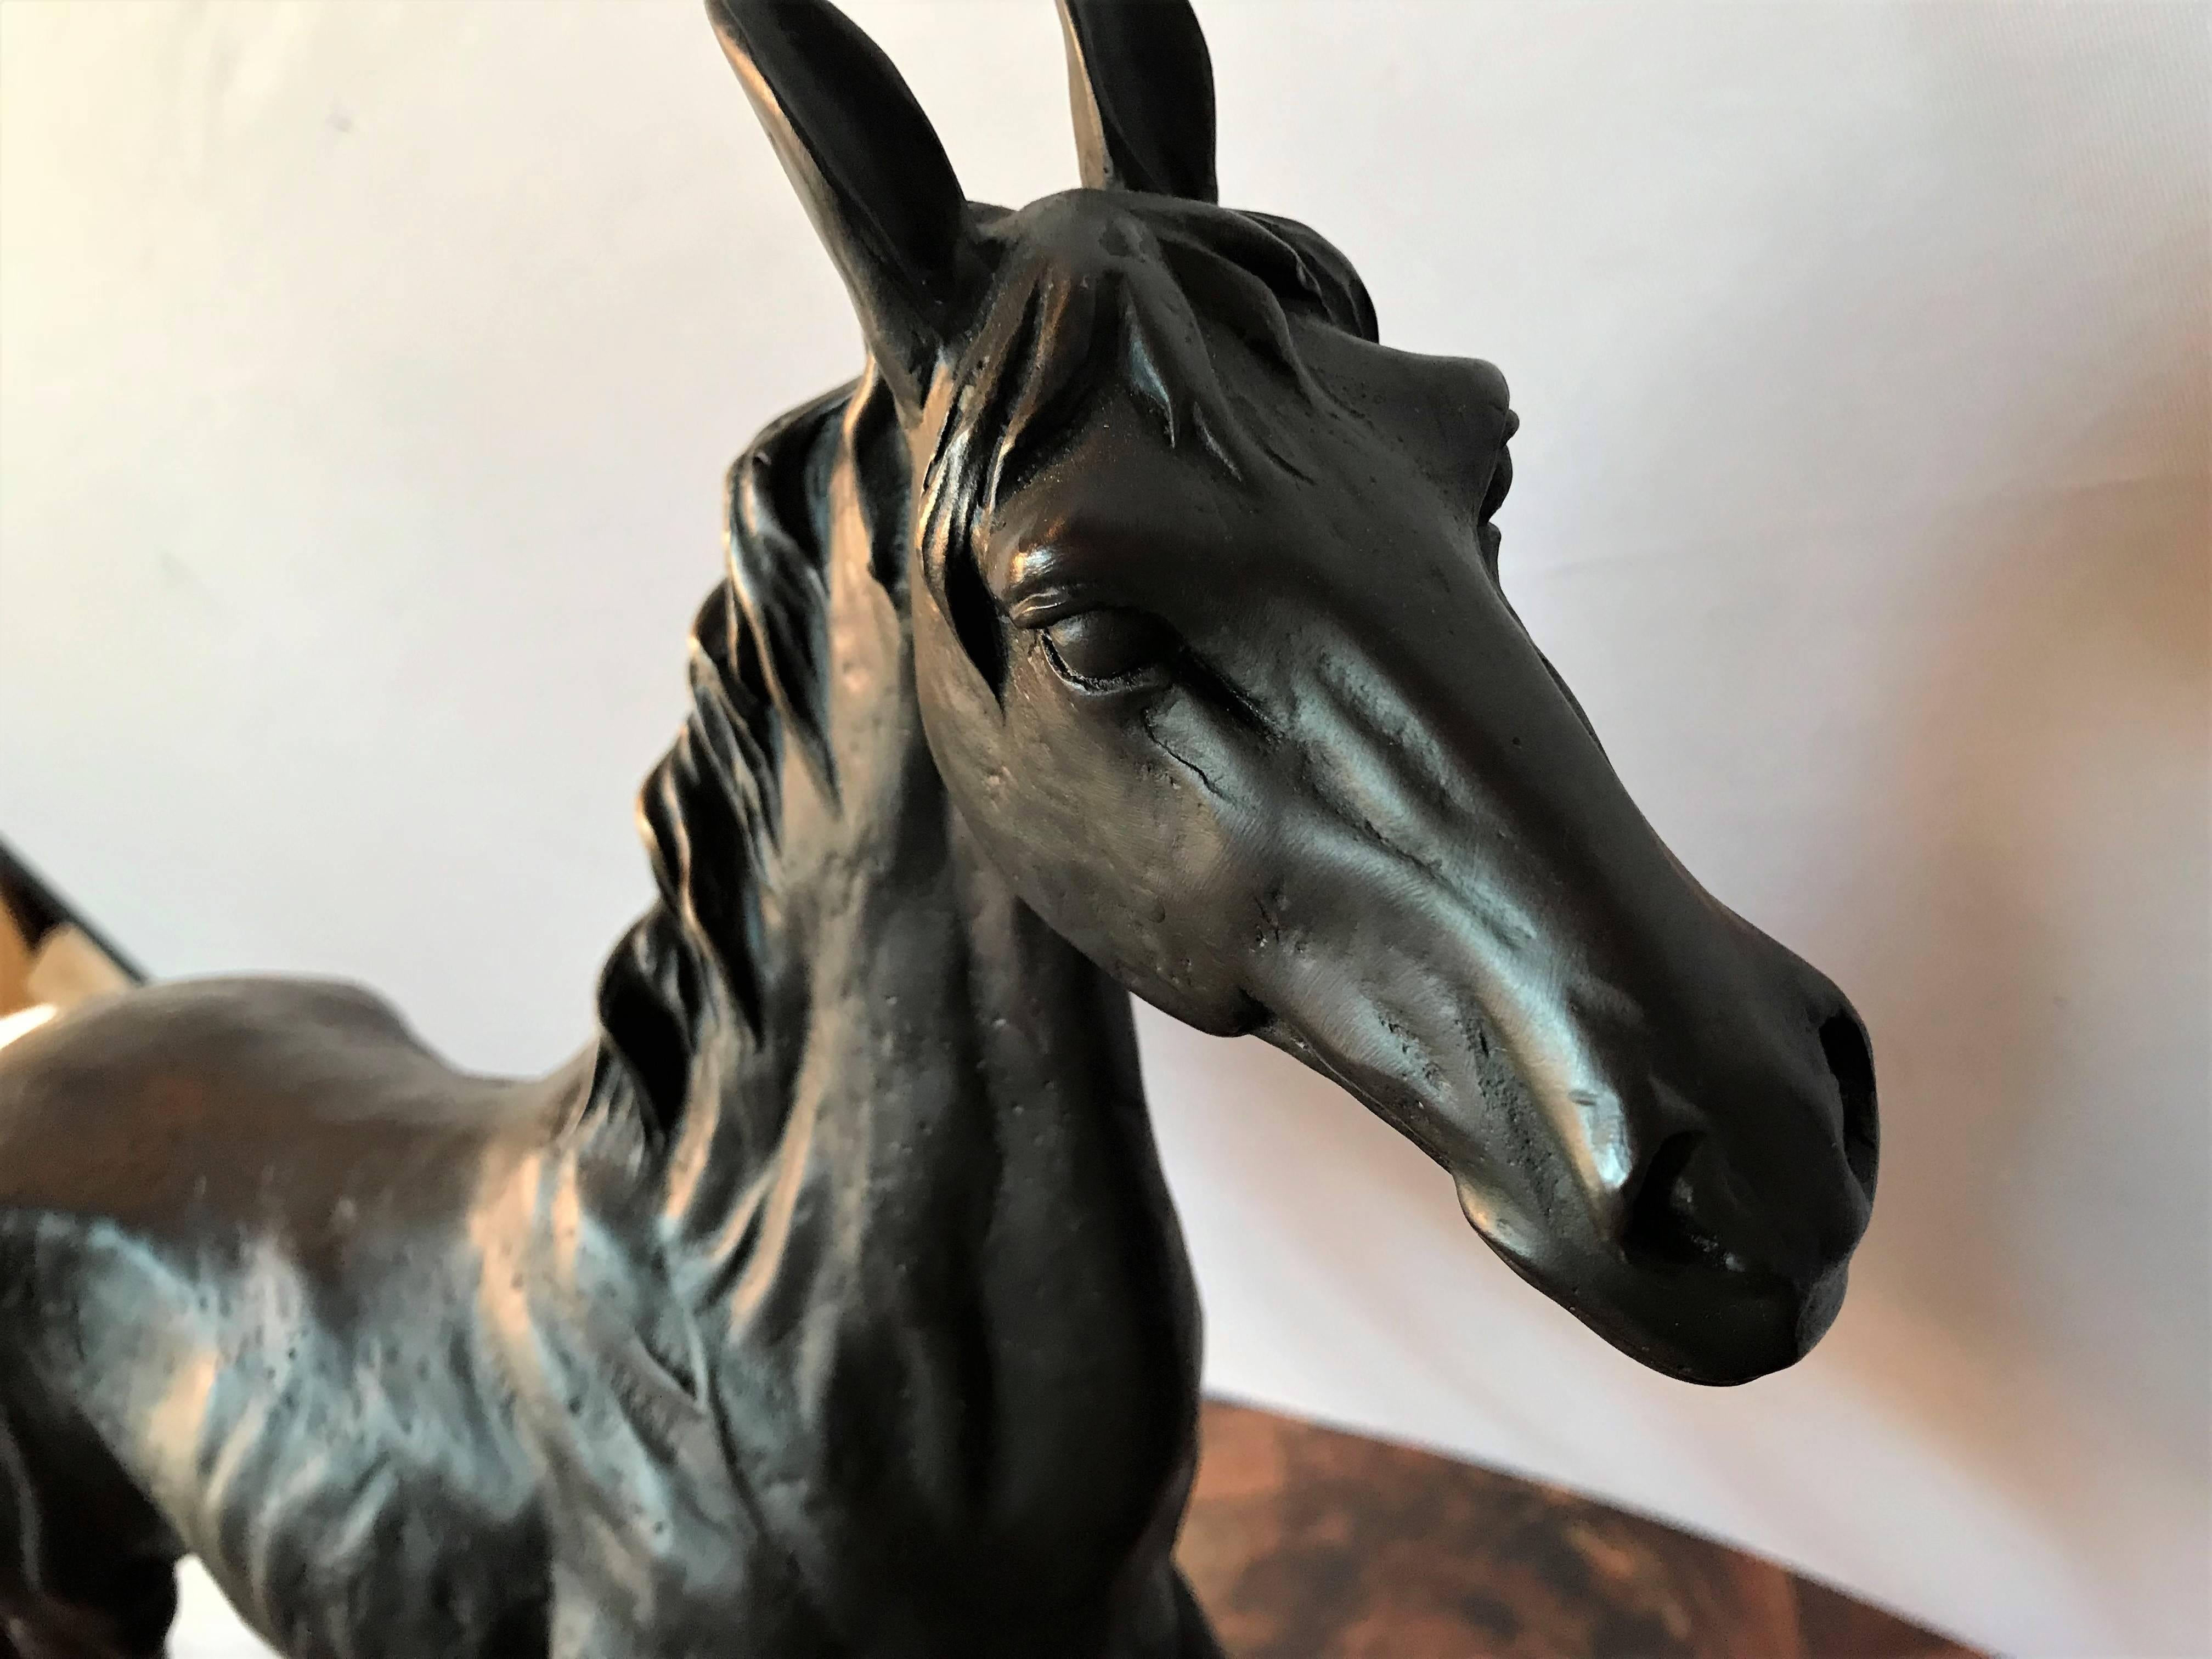 A bronze long eared stallion.